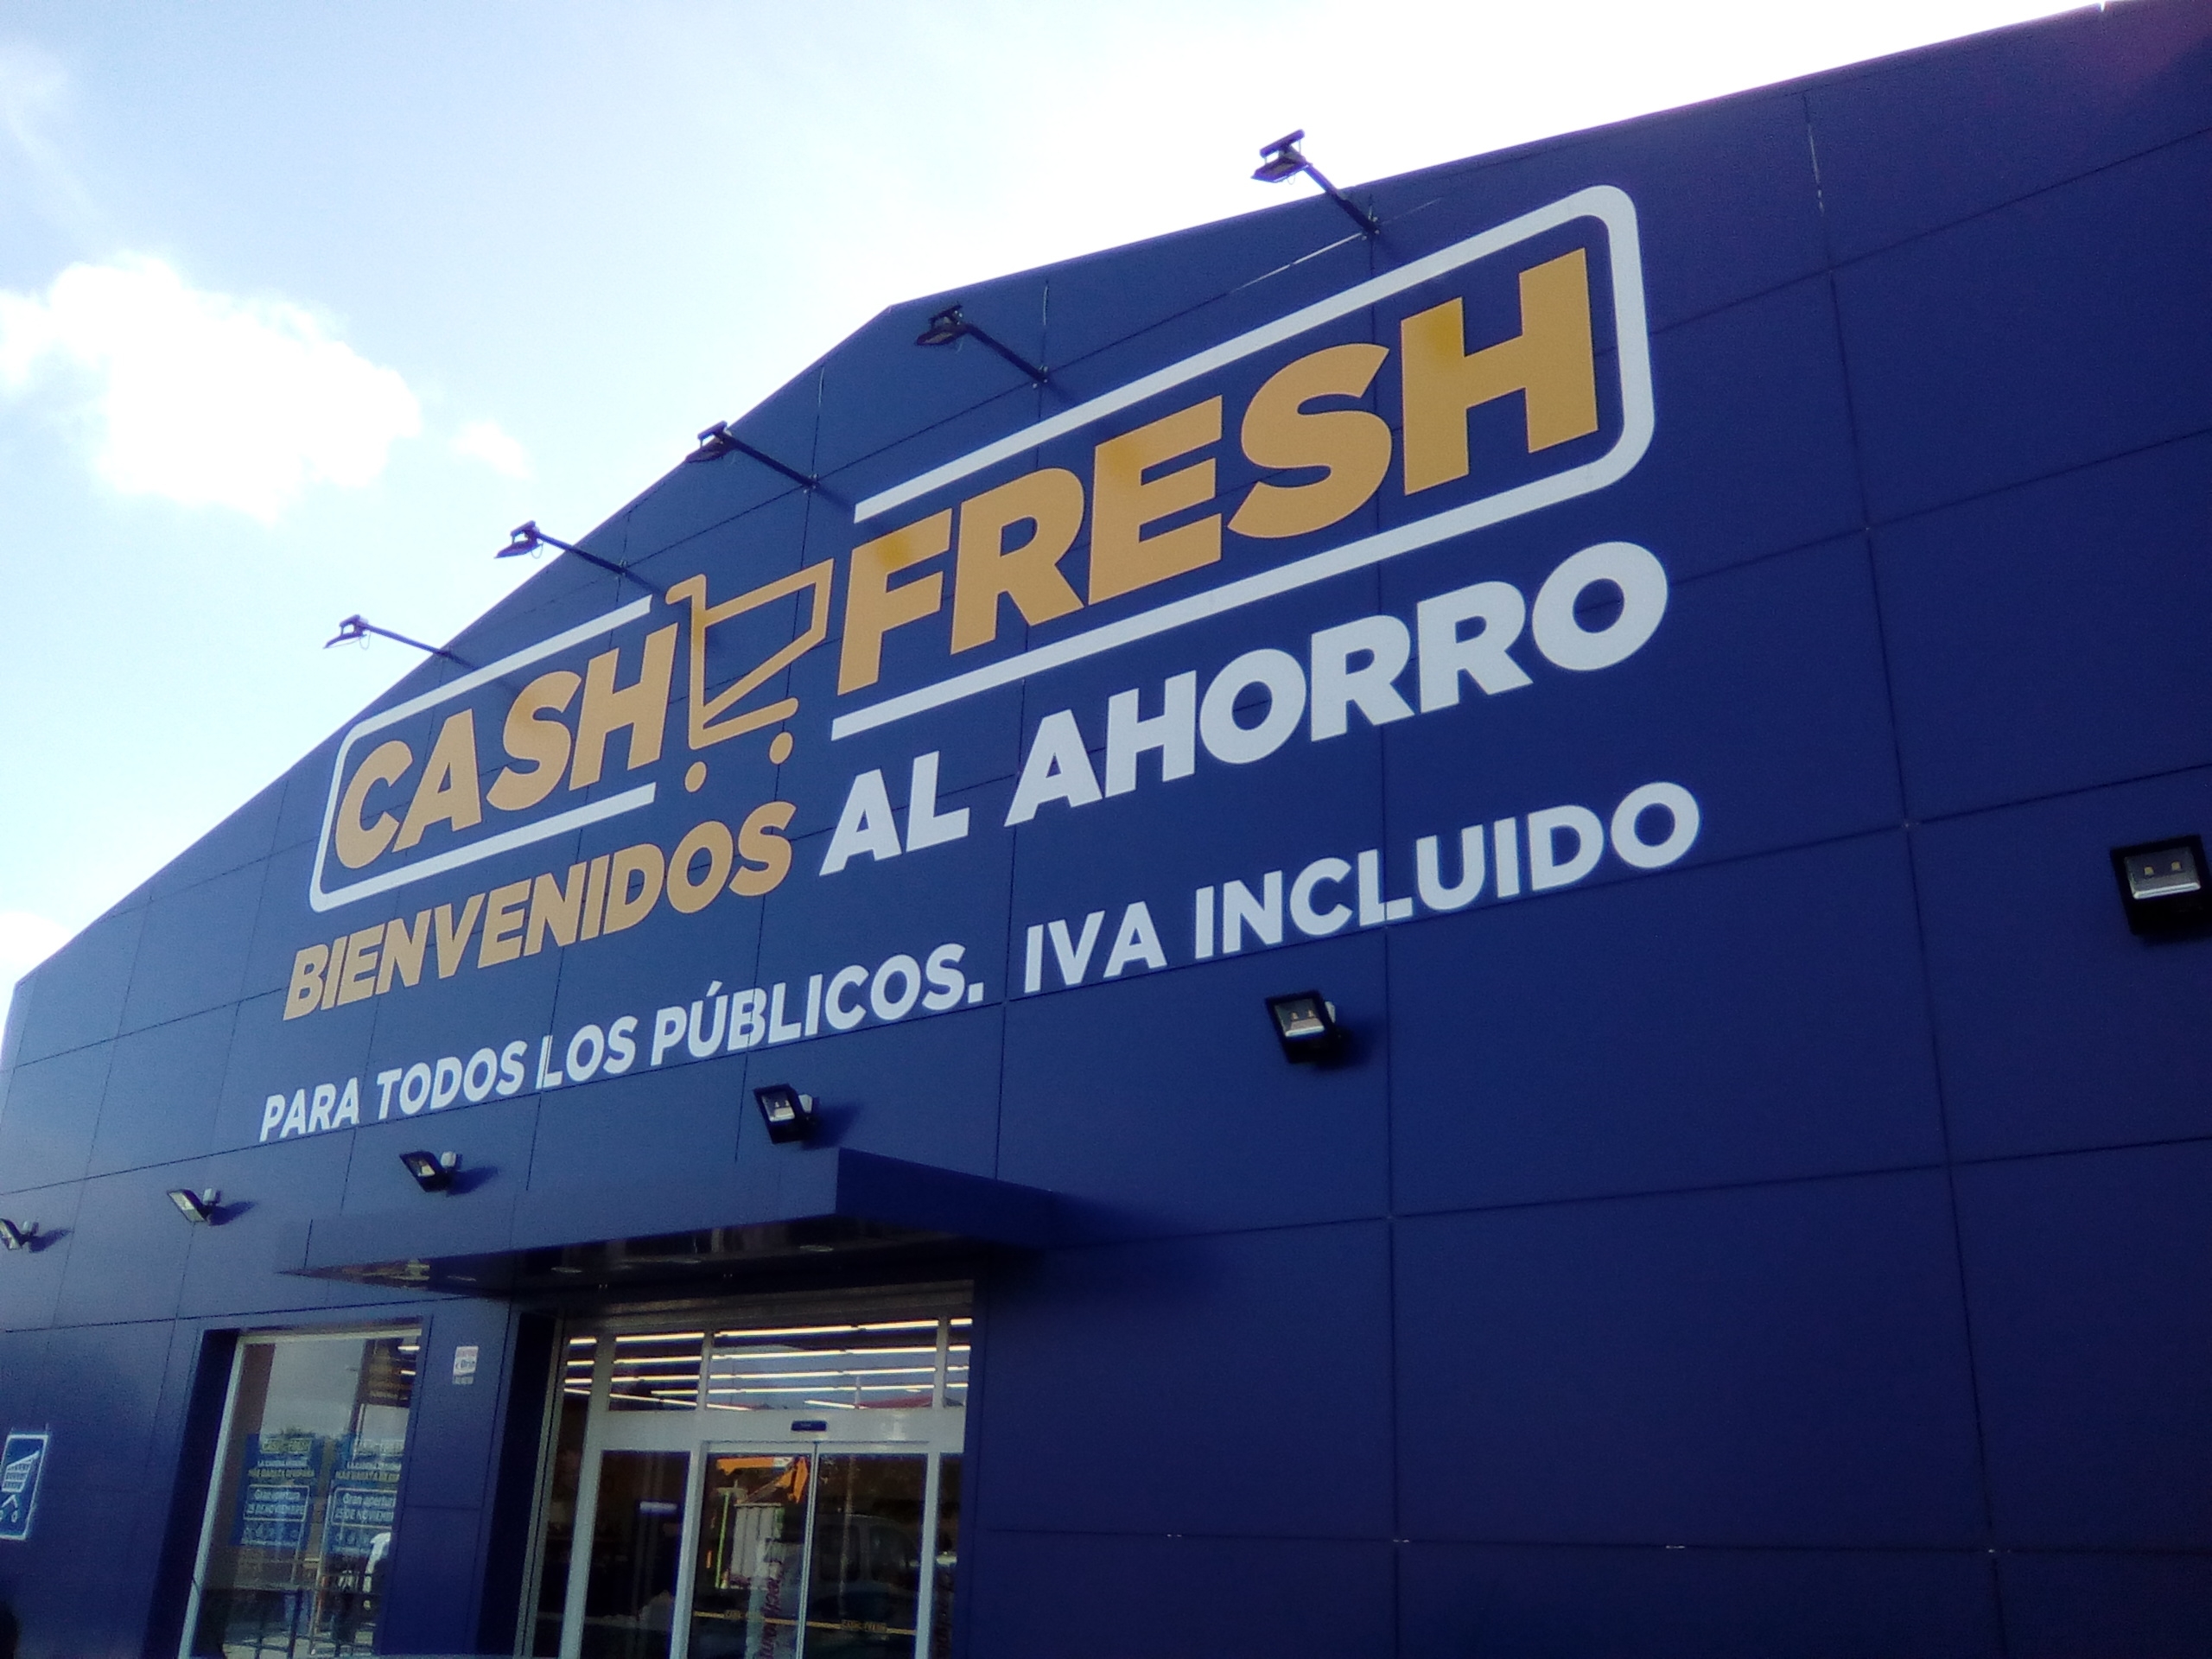 (c) Cashfresh.es